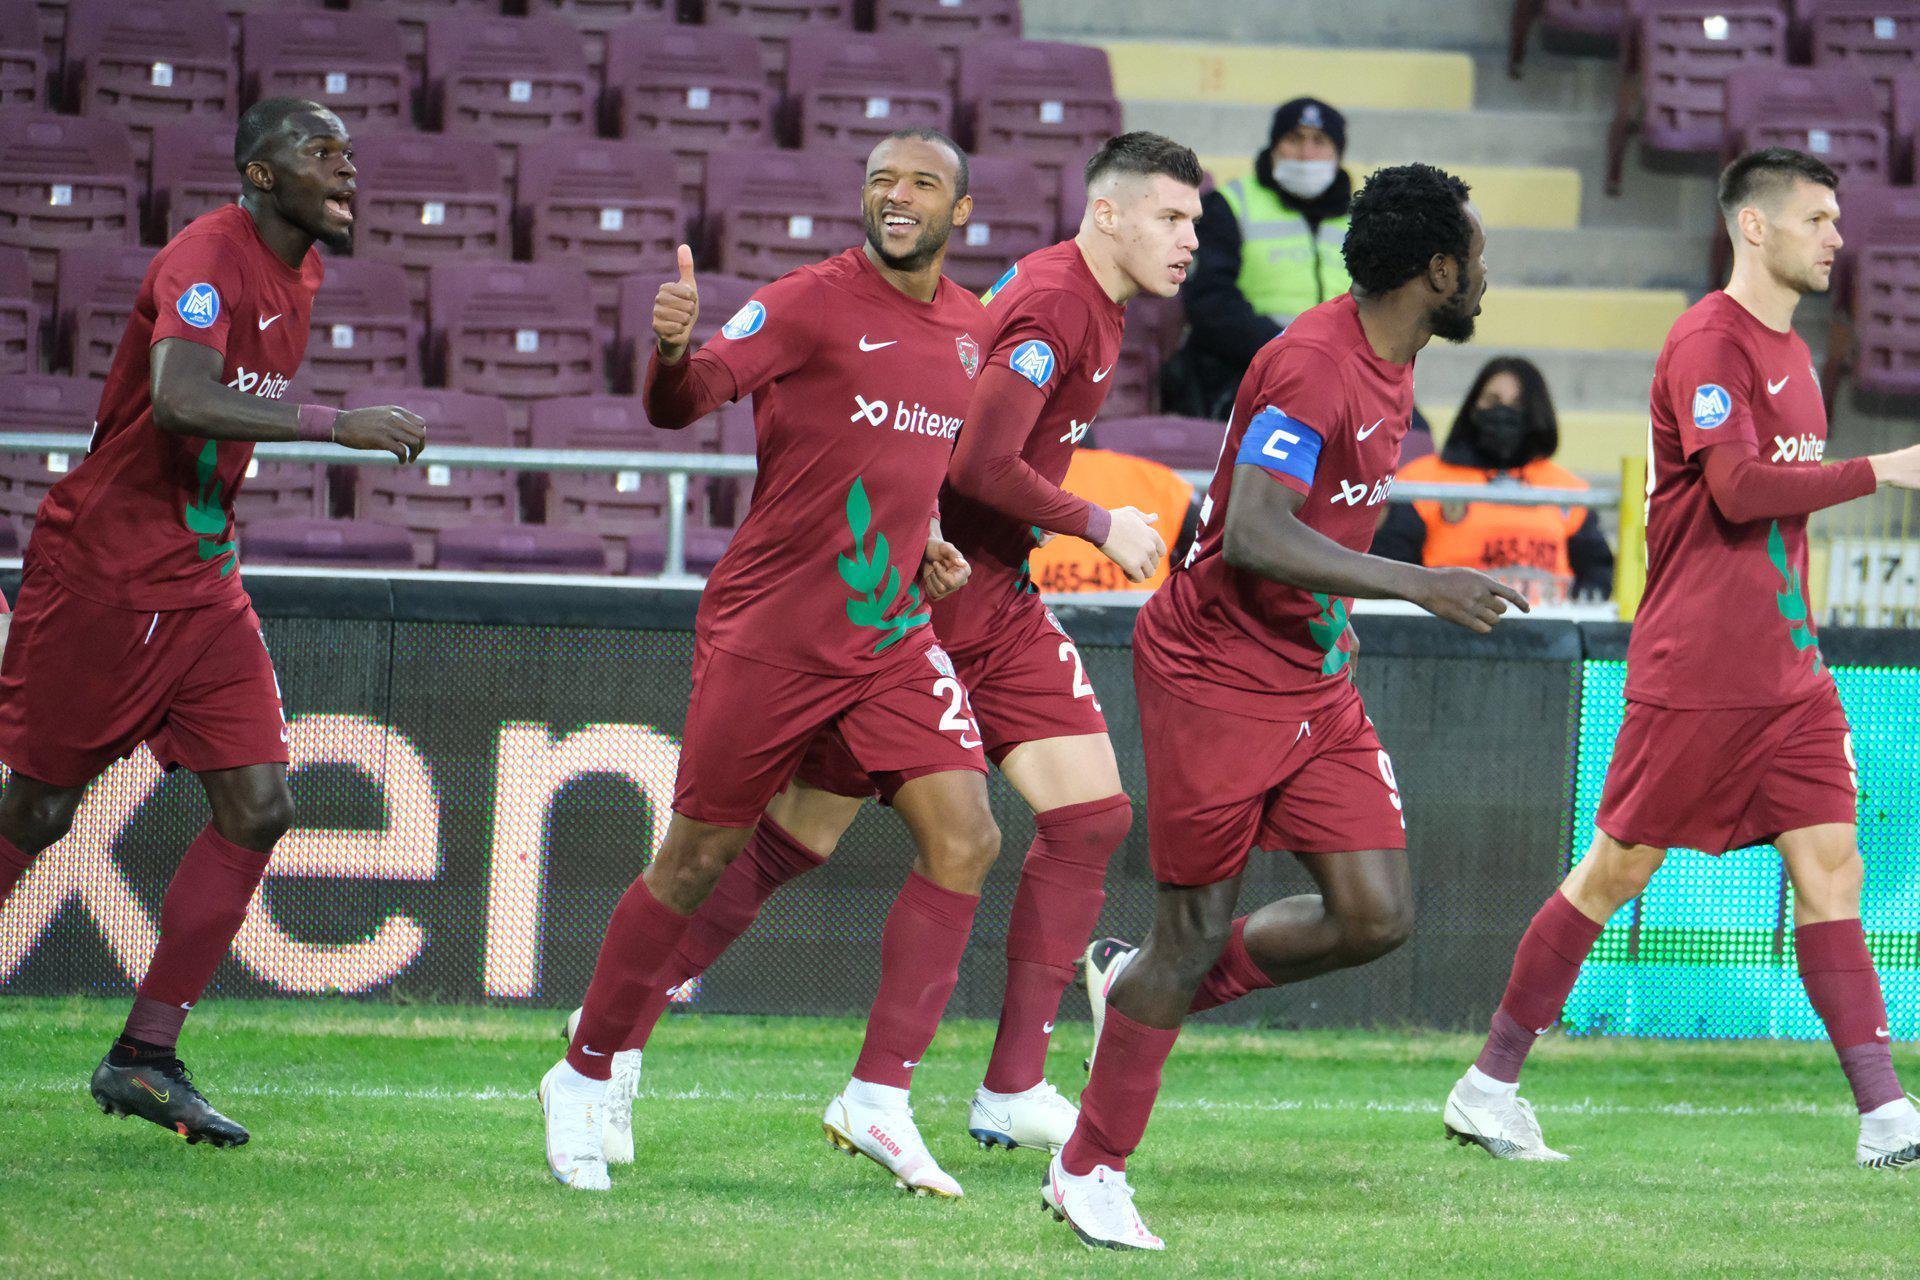 (ÖZET) Hatayspor - Konyaspor maç sonucu: 1-3